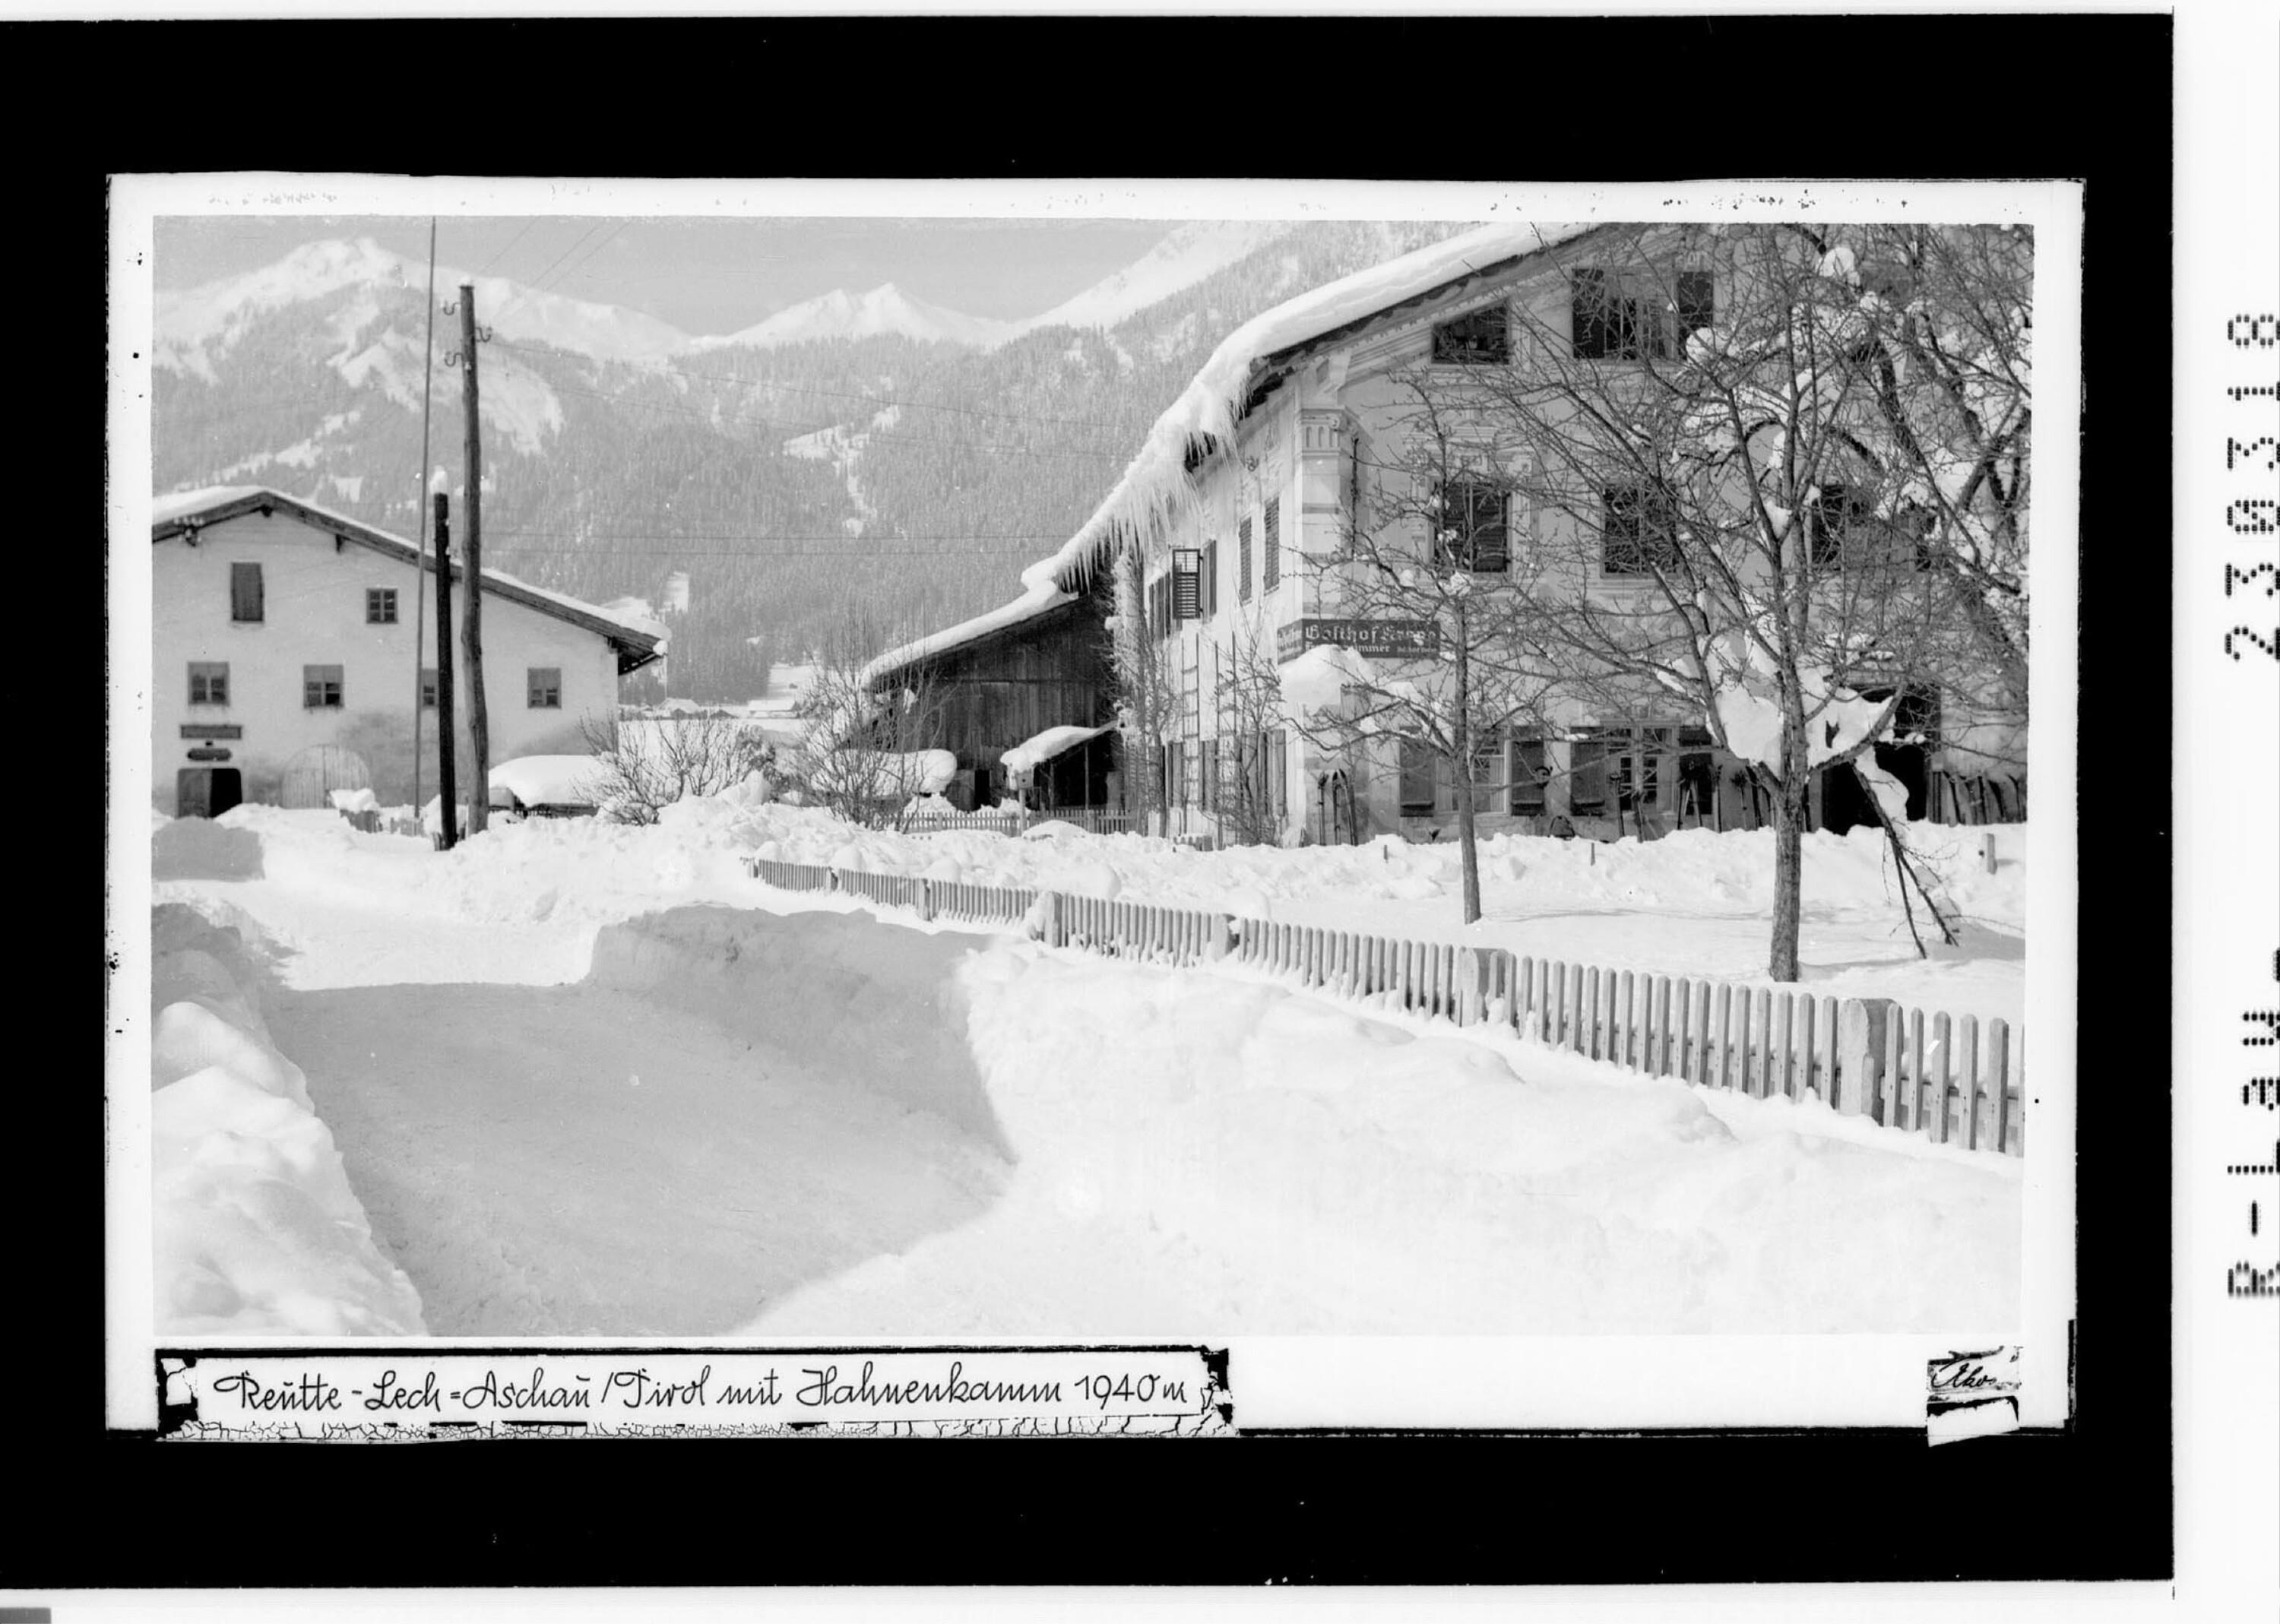 Reutte - Lechaschau / Tirol mit Hahnenkamm 1940 m></div>


    <hr>
    <div class=